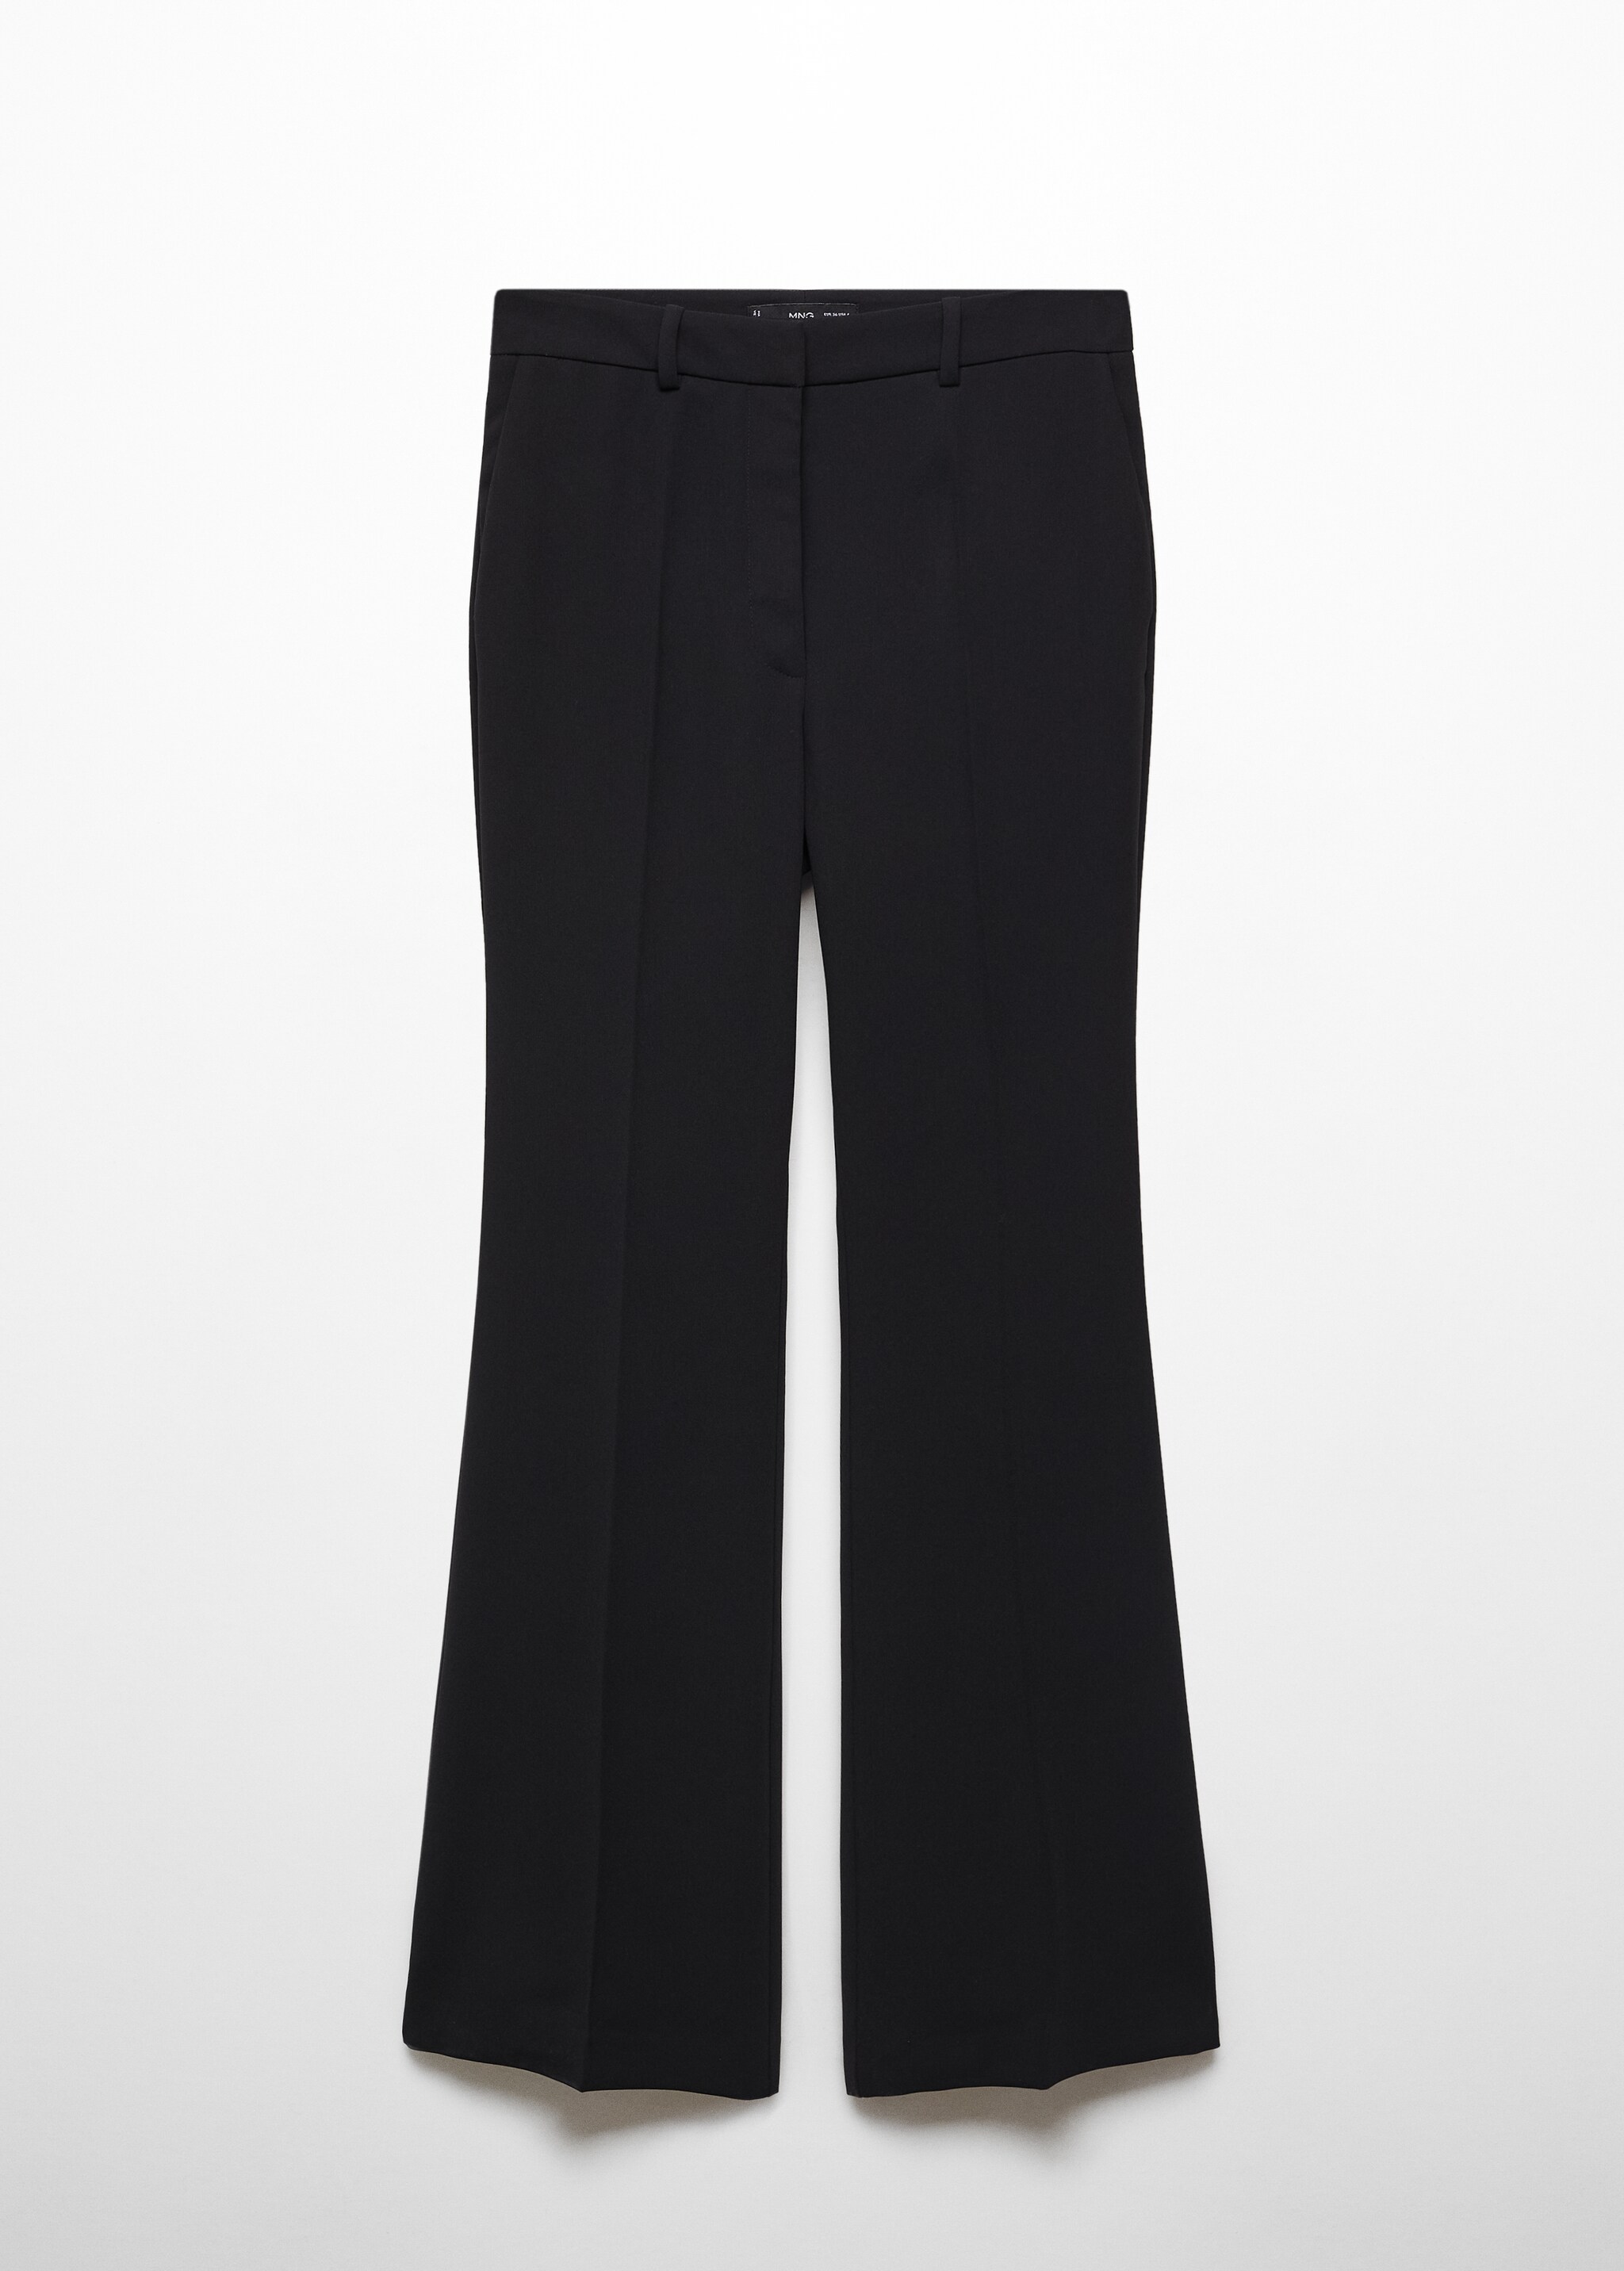  Flared kumaş pantolon - Modelsiz ürün